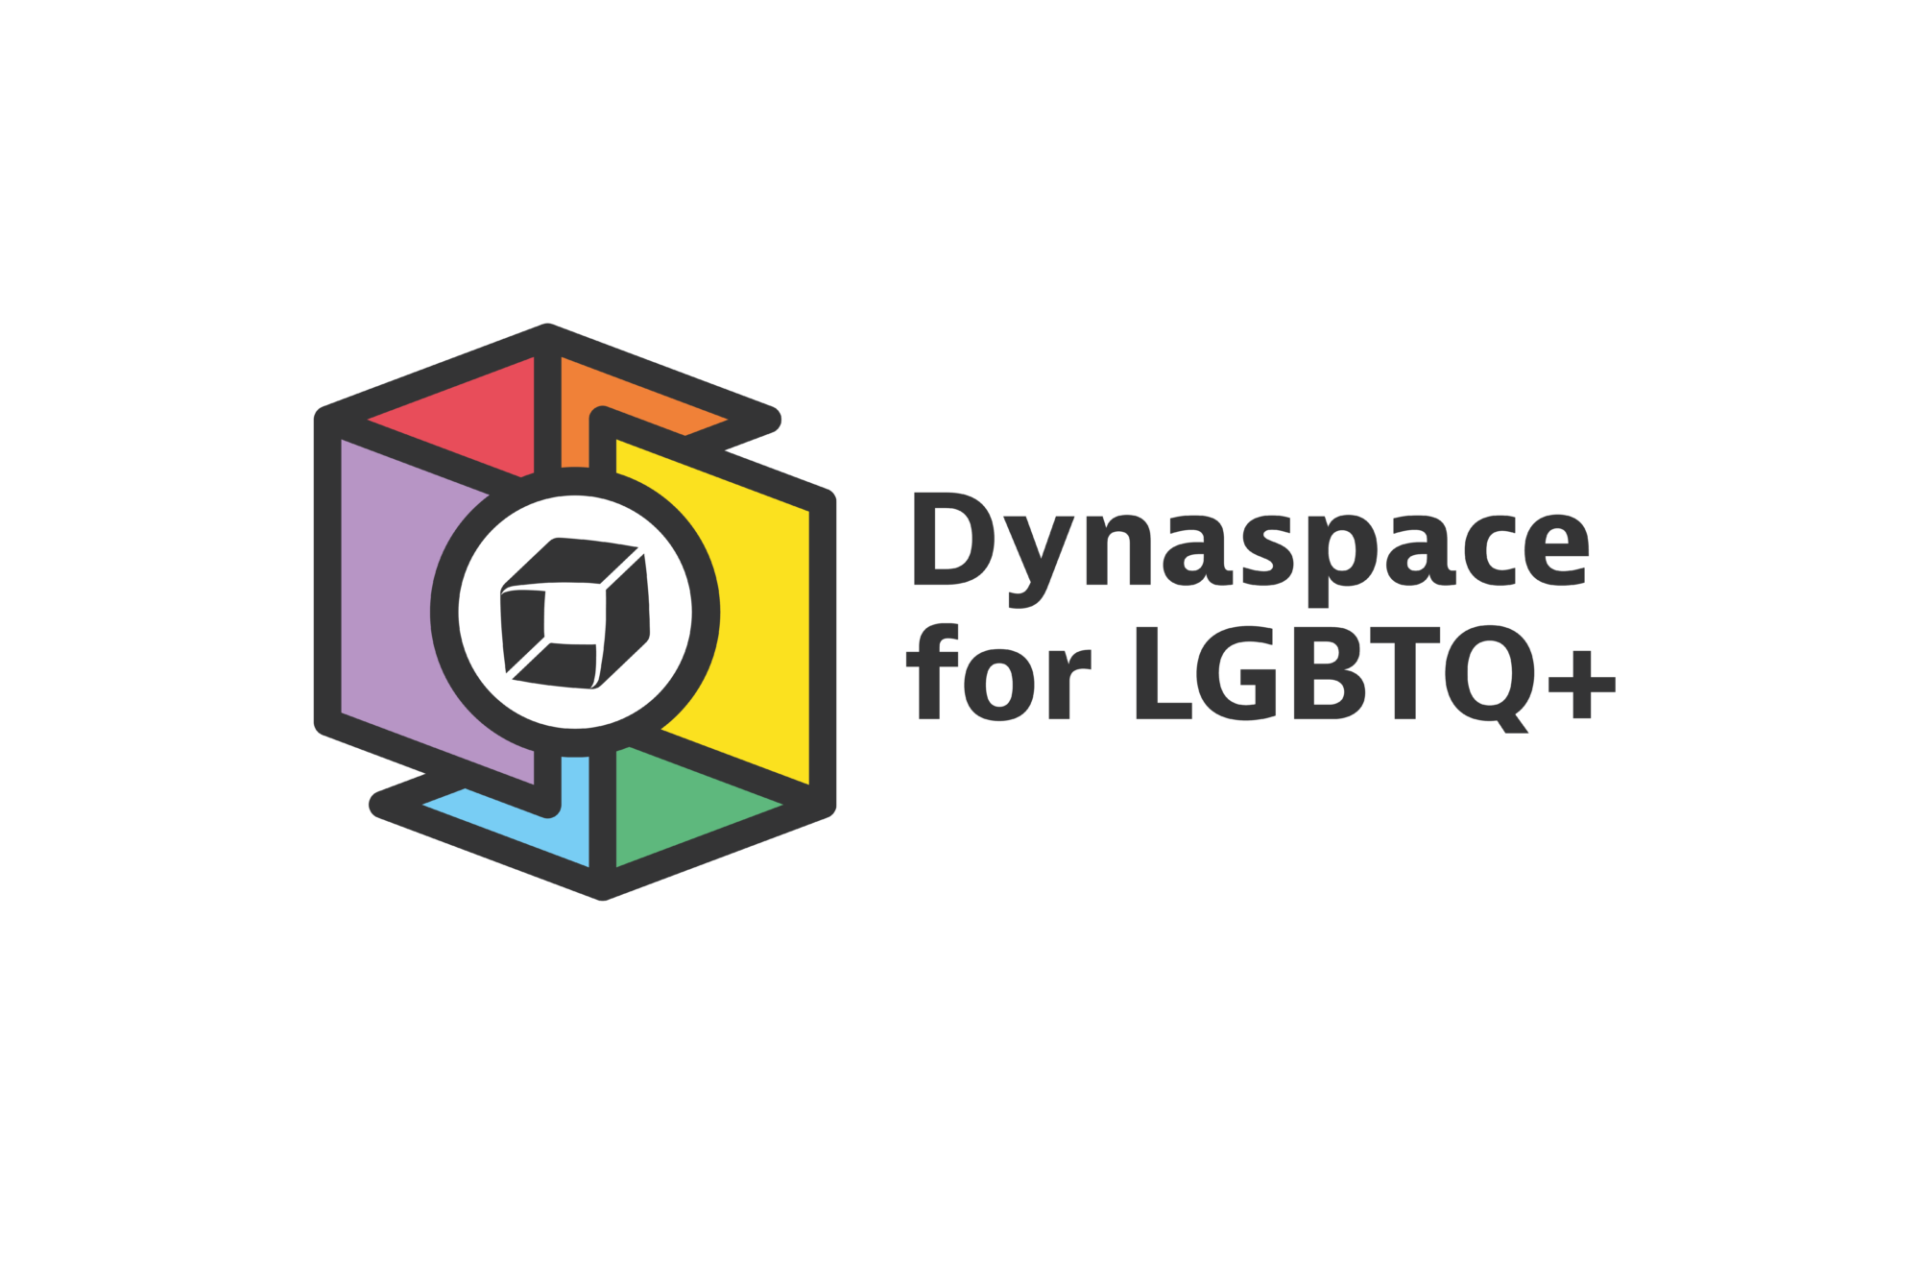 Dynaspace for LGBTQ+